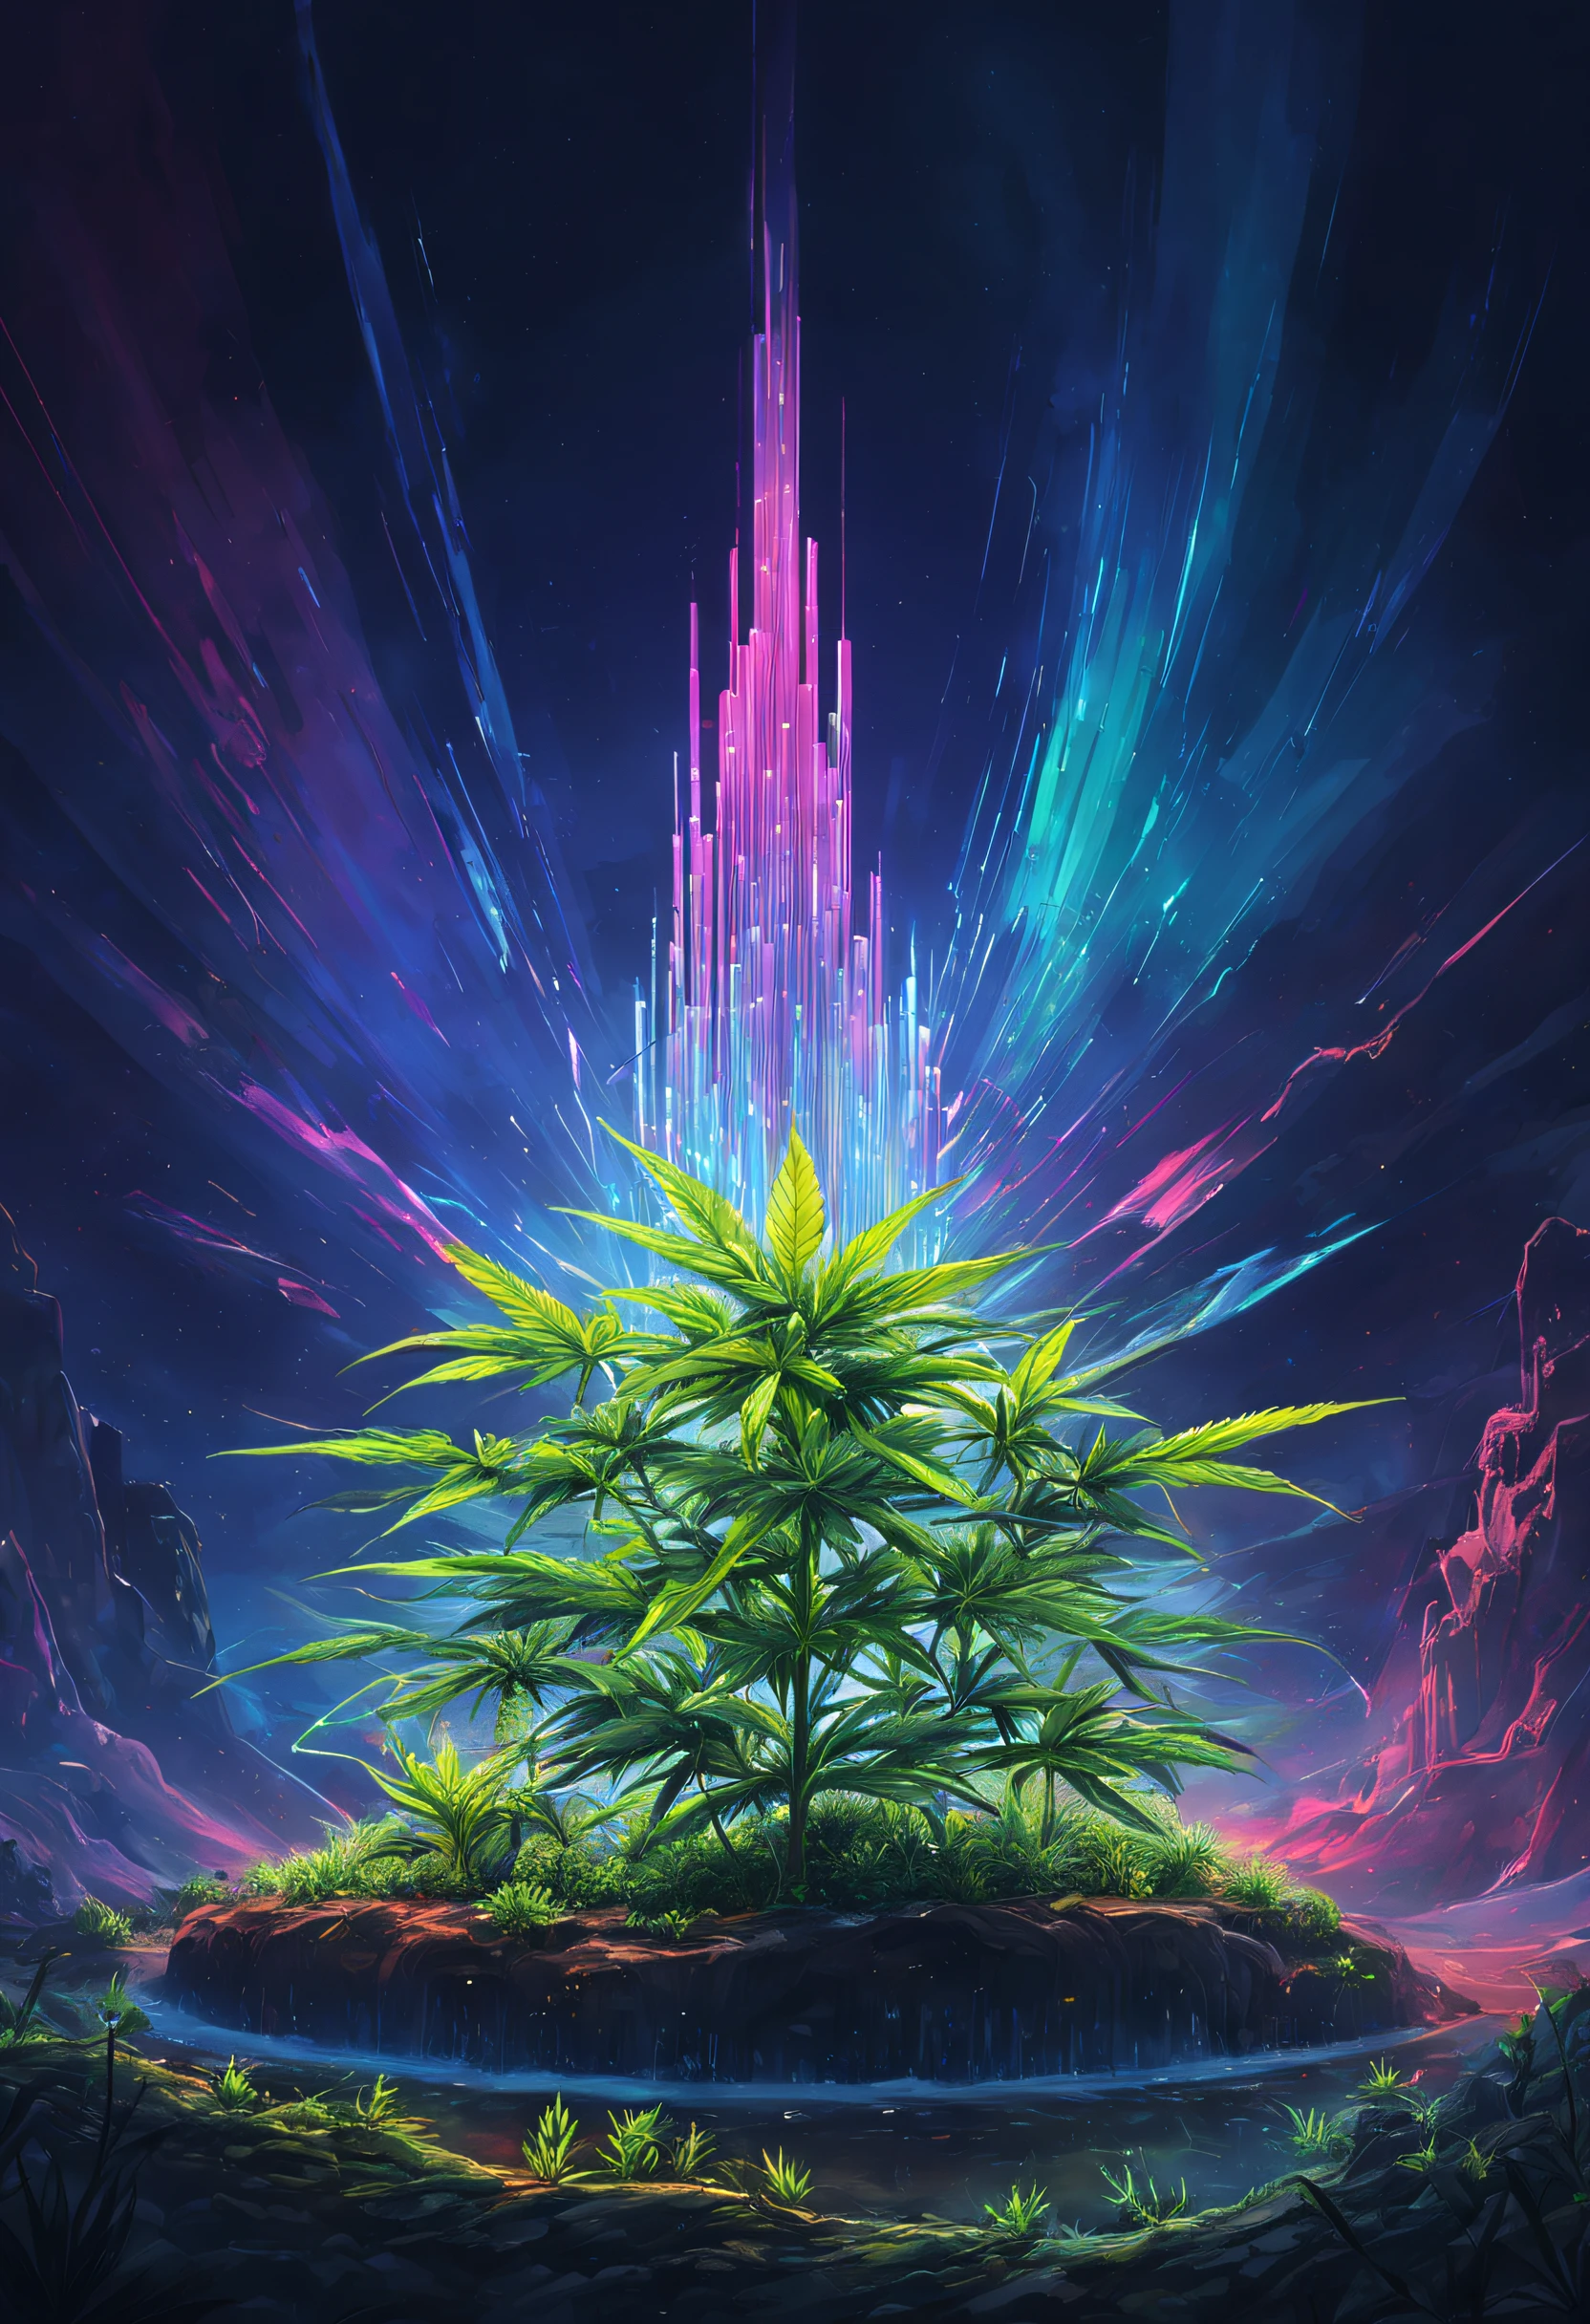 Cannabis полеs(Лучшее качество,4k,8К,высокое разрешение,стол:1.2),ультрадетализированный,(реалистичный,фотореалистичный,Фотореалистический:1.37),яркие цвета,боке,пейзаж,концепт-художник,футуристический,Marijuana полеs,эффект глюка,связи,технологии,Новое будущее,возможность,курить,Свет,призрачный,красочный,поразительный,ночь,пылающий,неоновые огни,со светящимся светом,энергия,проволочный каркас,моделирование,электронная музыка,передовые технологии,цифровой,абстрактный,синтетический,облака,поле,мраморная скульптура,спидометр,Контрастность,промышленный,Оптический камуфляж,органическая форма,Растение,отражающие поверхности,отражение,Артистизм,сверкающие звезды,структуры,сложная форма,яркий свет,Киберпанк,лазер,МЕТАЛЛ,музыка,прогрессивный,вибрирующий,эмоциональный,неизведанный,эволюционировать,cannabis энергия,двигатель каннабиса,прозрачность,кристаллизация каннабиса,Переносит,обследование,лунный пейзаж,экологический,среда,тонкий набор,заманчивый,Поэтический,Элемент,образец,измерение,технологии,Художественно,дизайн,Возможна регенерация,будущие возможности,инновации,цифровой painter,космос,высоко,3D технологии,Изобразительное искусство,необъятность,ИЗМЕНЕНИЕ КЛИМАТА,энергия efficiency,прогрессивный,голограмма,Экосистема,20ХХ,сельское хозяйство,зеленые технологии,энергия revolution,]